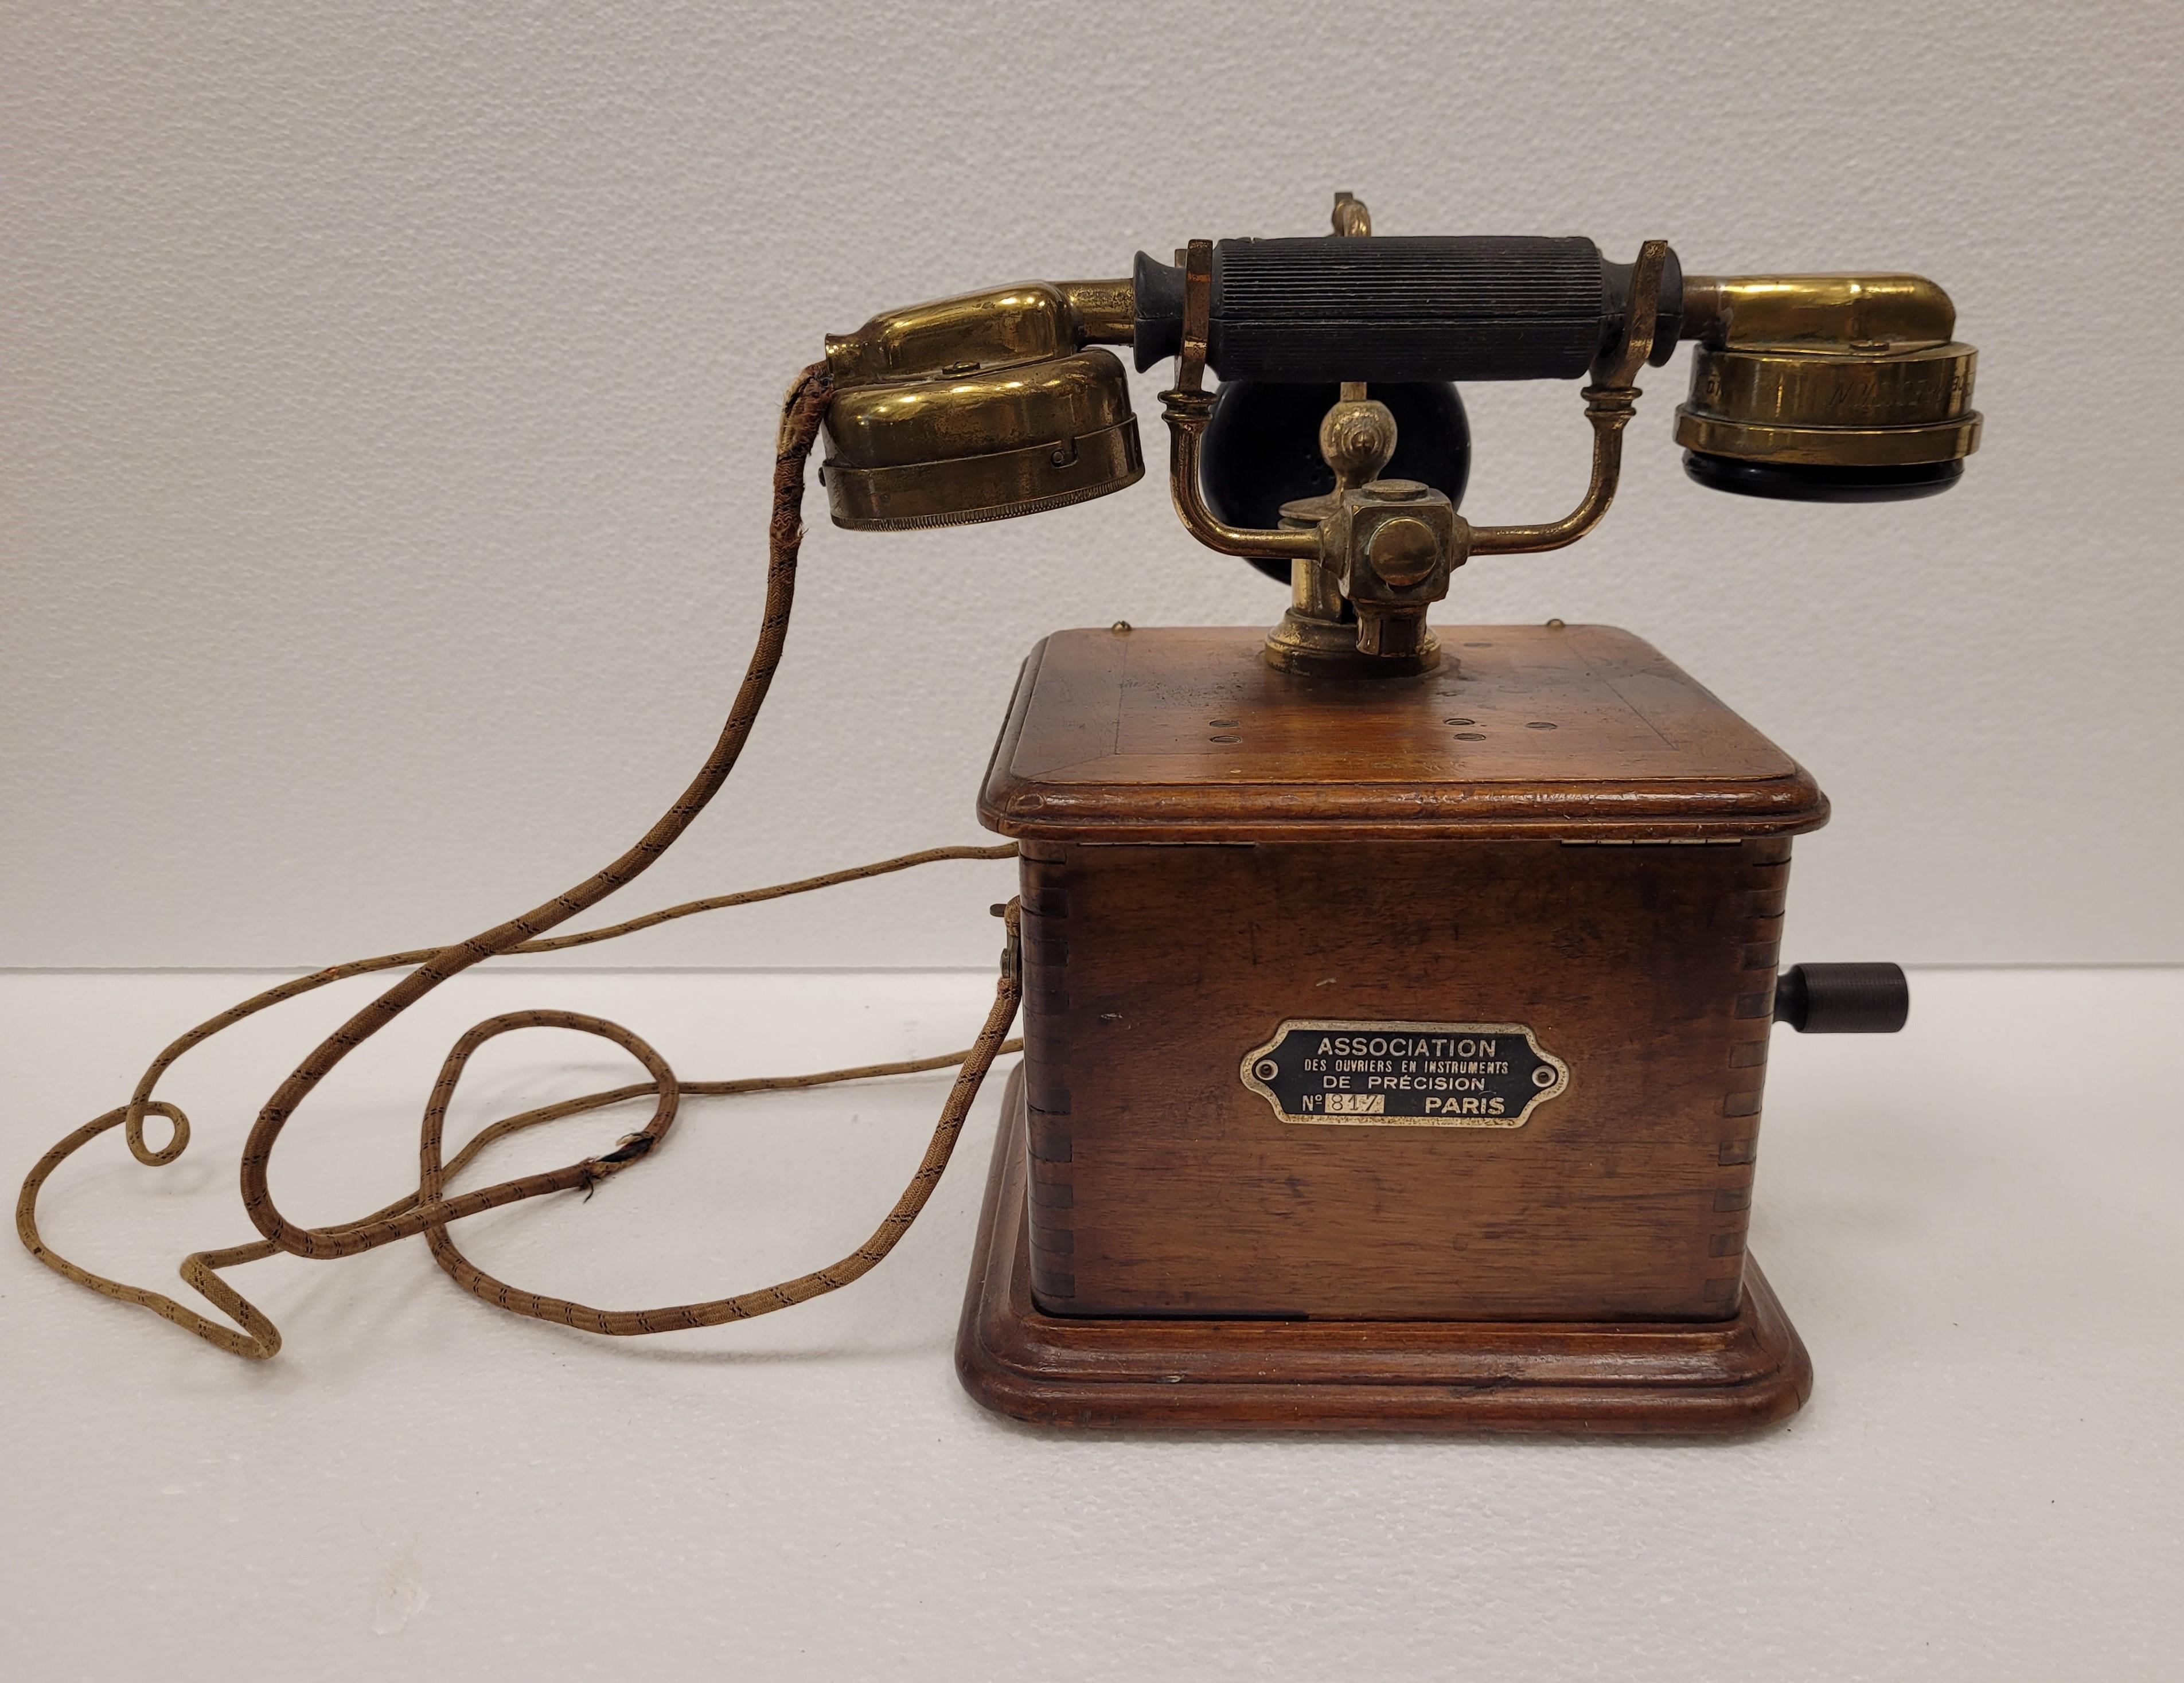 19th century phones